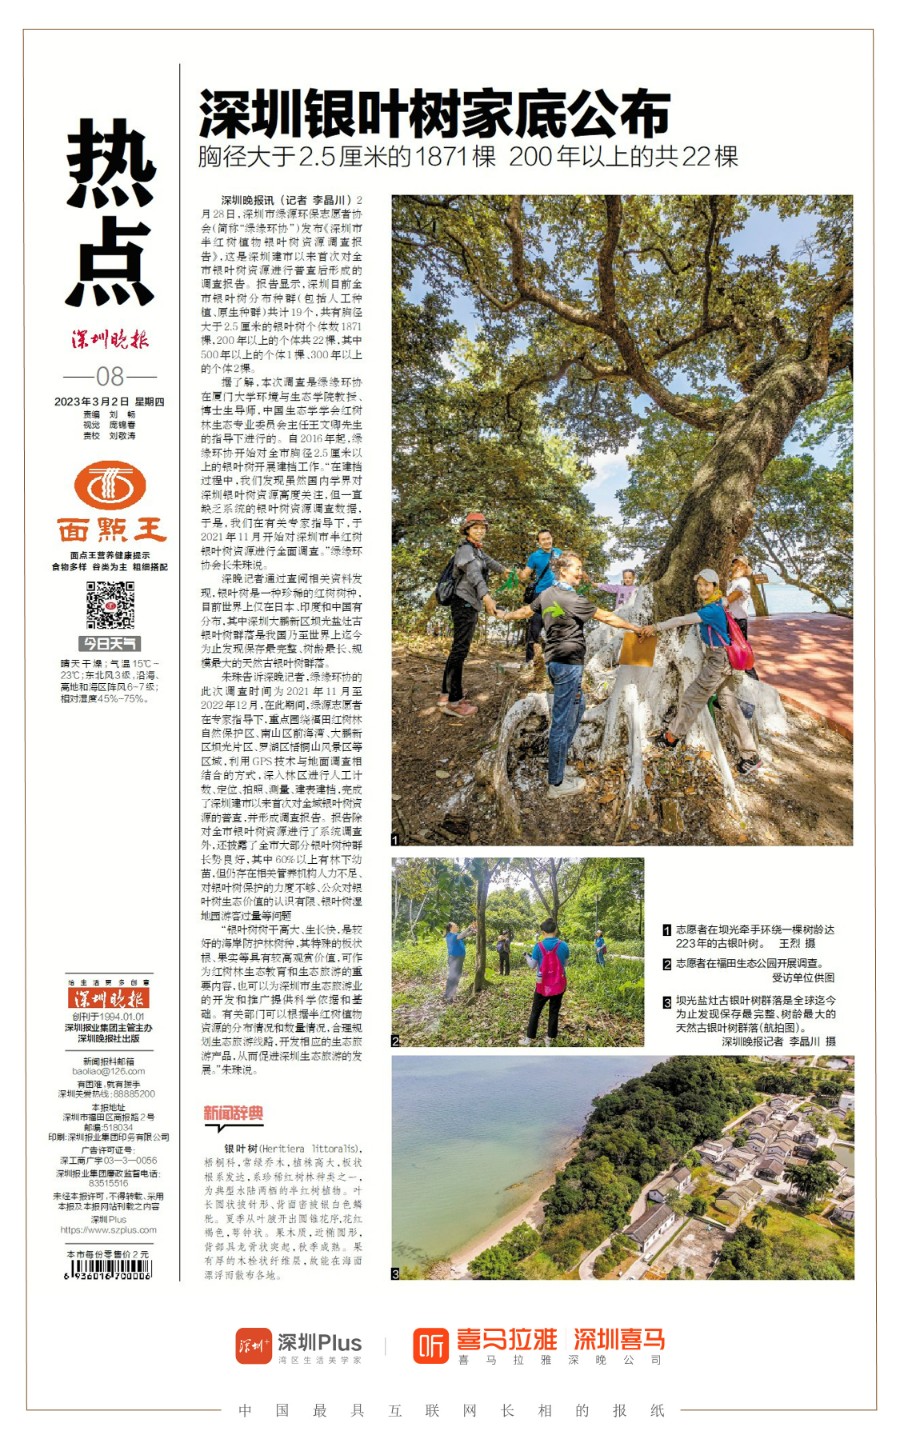 发布 | 《深圳市半红树植物银叶树资源调查报告2022》